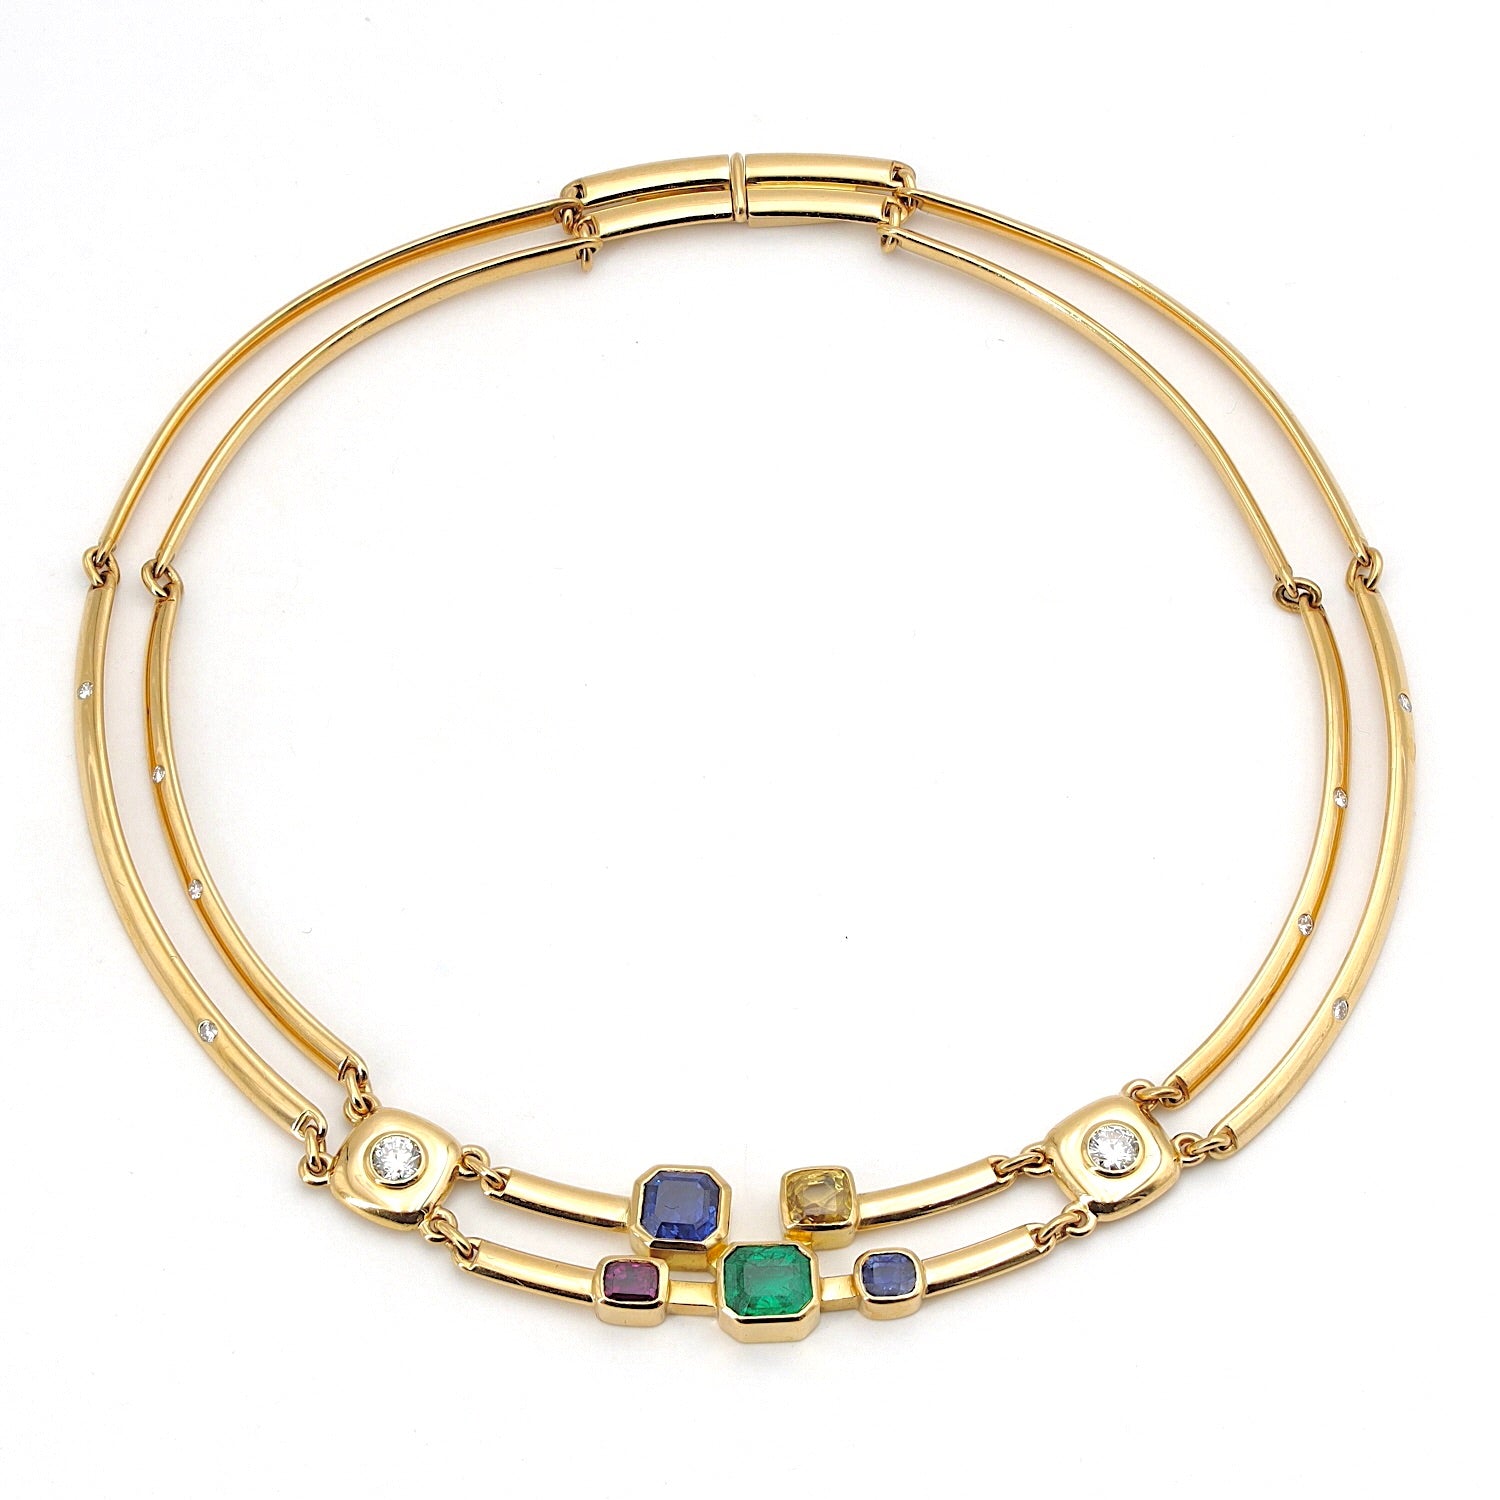 Angefertigtes exquisites Collier aus 900er Gold mit Brillanten, 1 Smaragd, 3 Saphiren und 1 Rubin